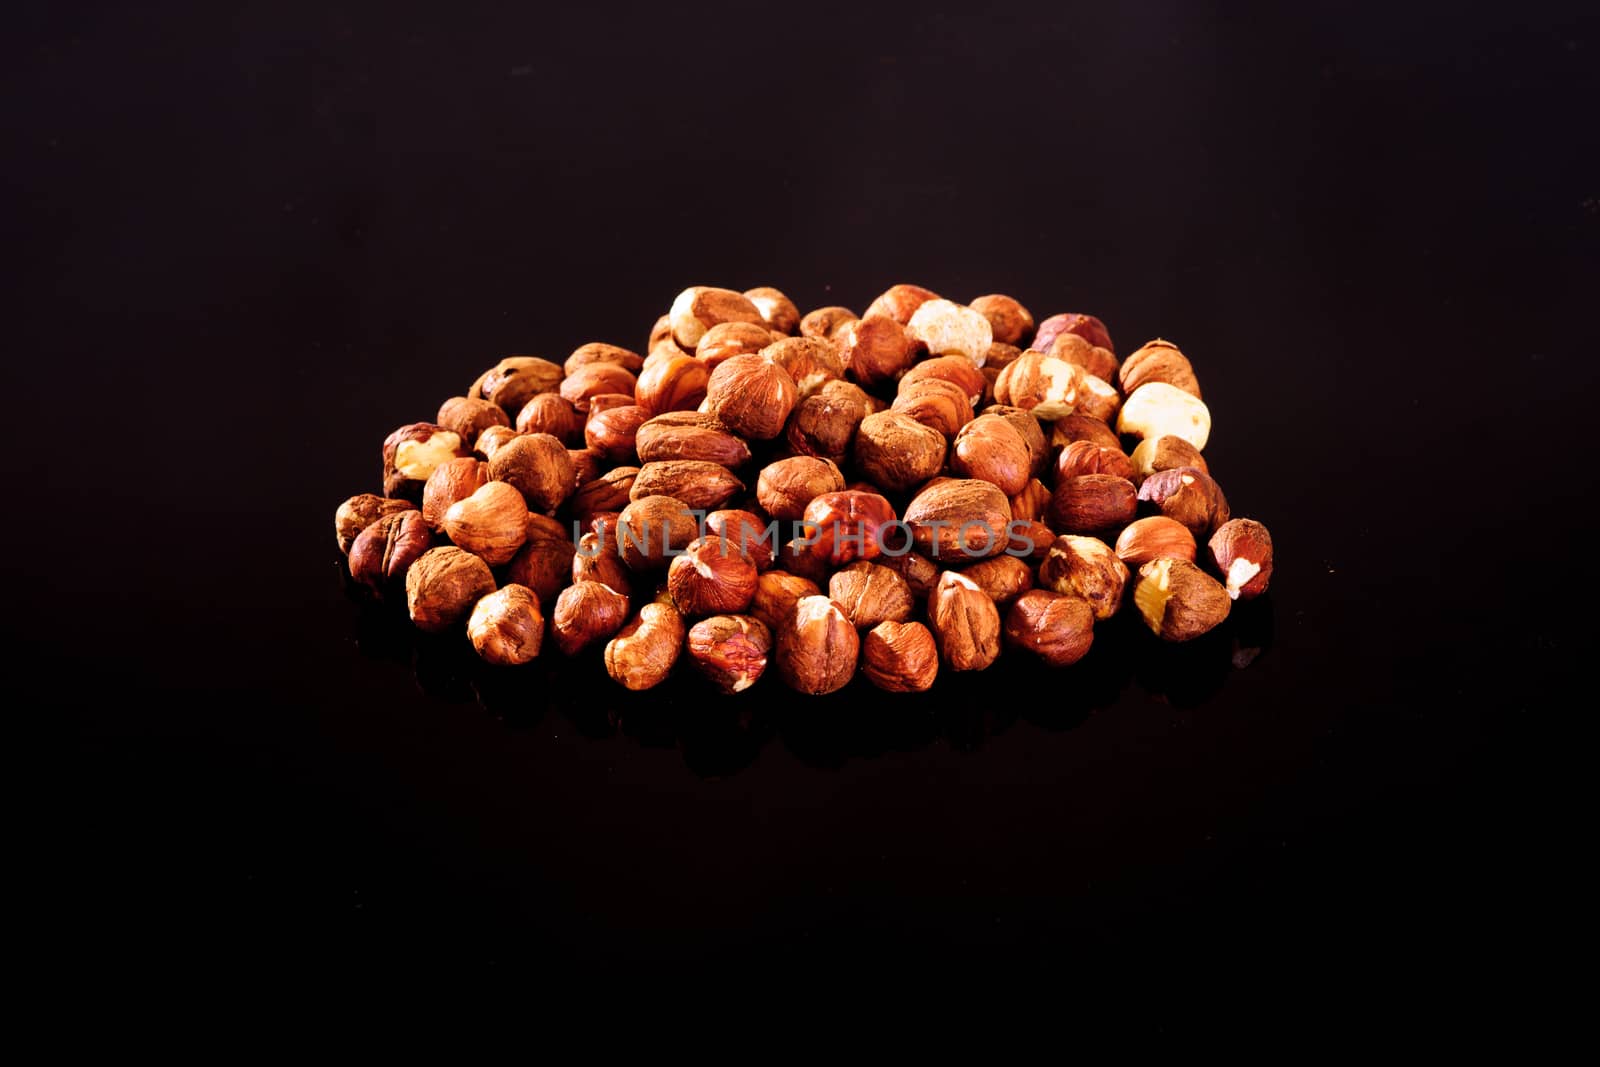 Hazelnuts on a black background